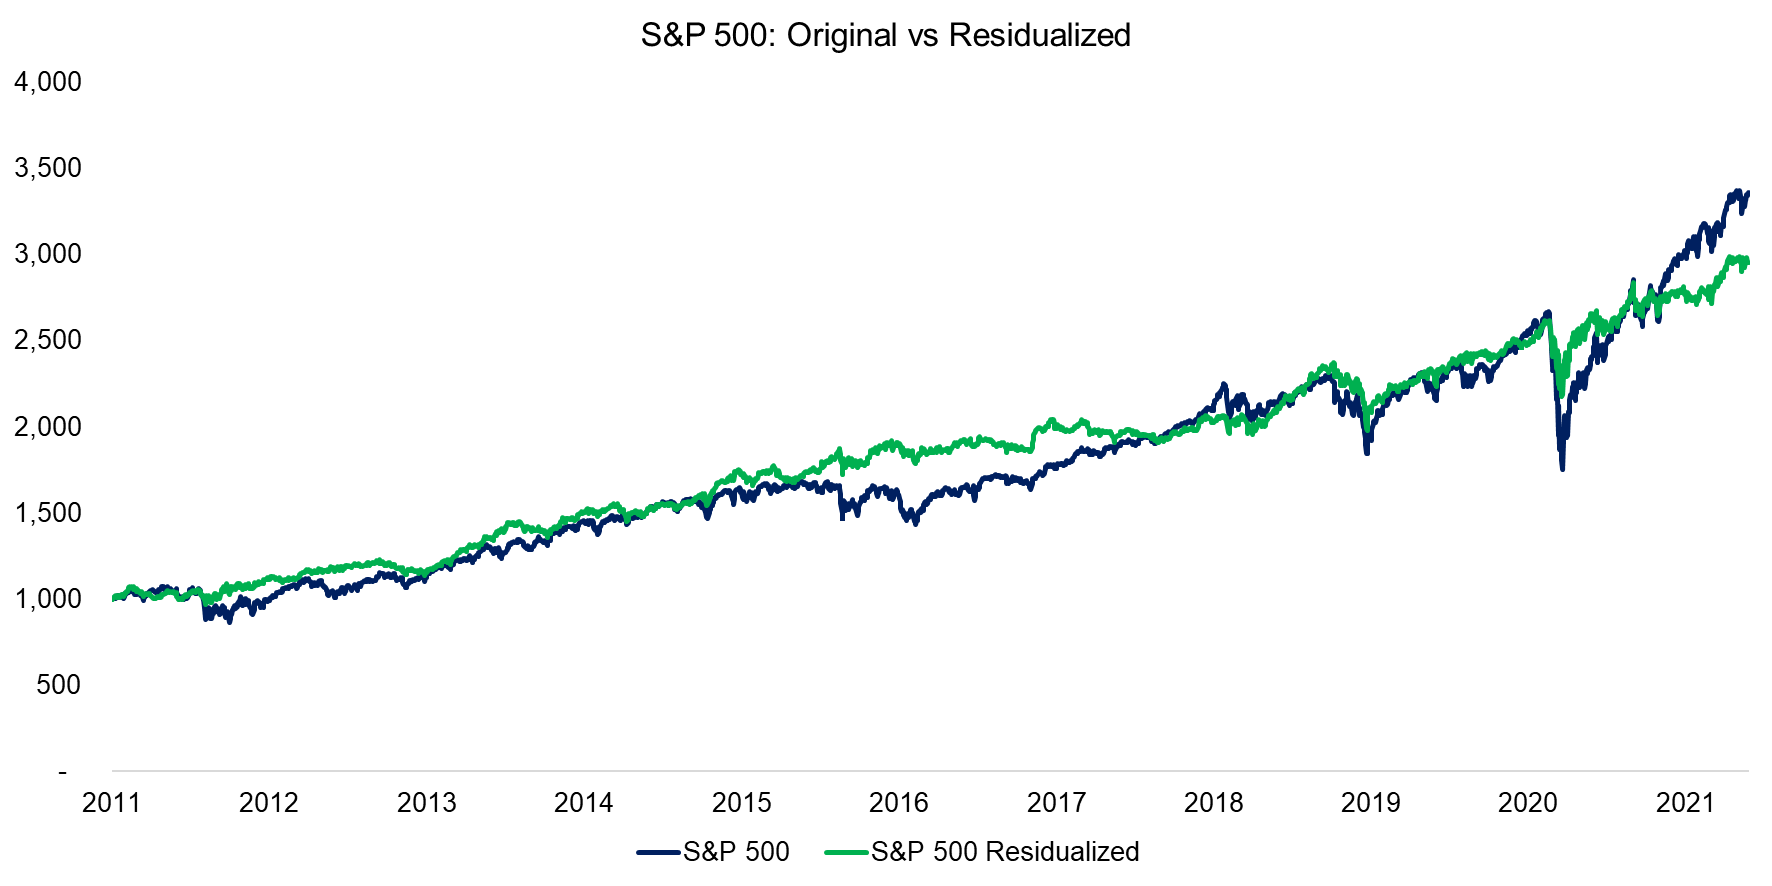 S&P 500 Original vs Residualized